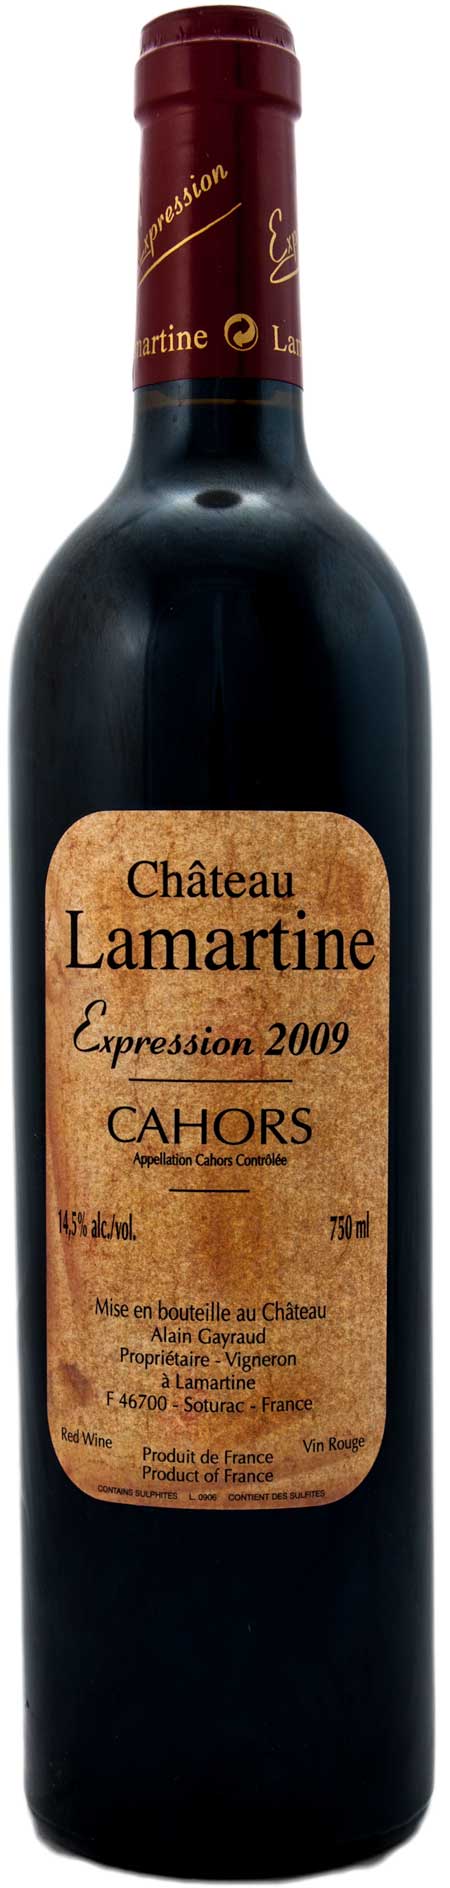 Château Lamartine - Expression